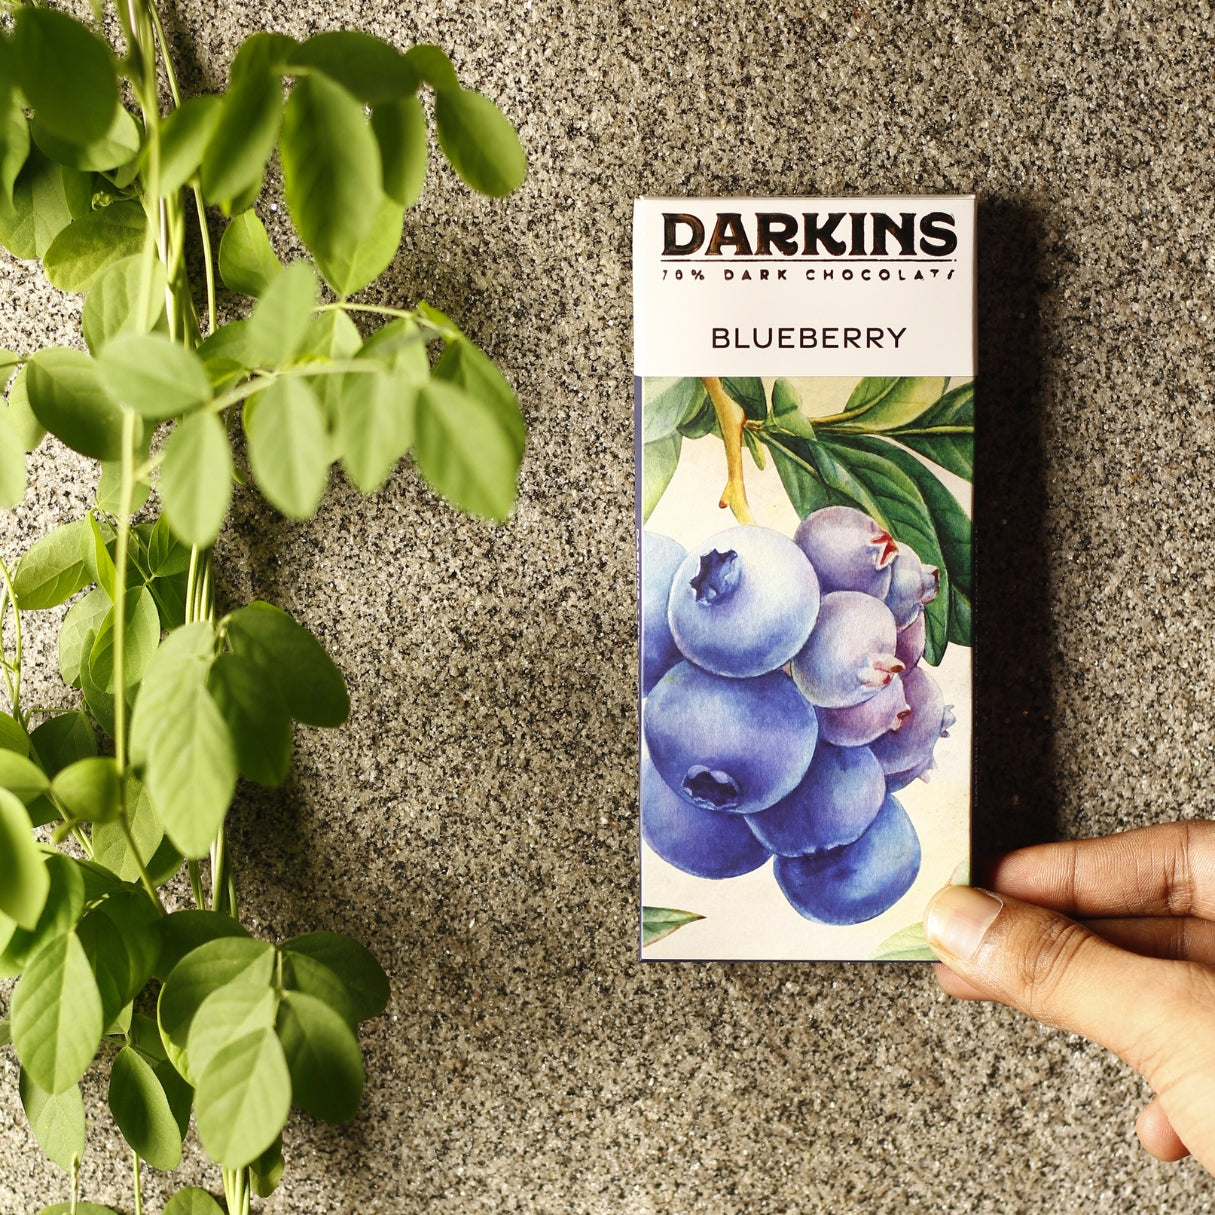 Darkins Dark Chocolate Blueberry - 70%